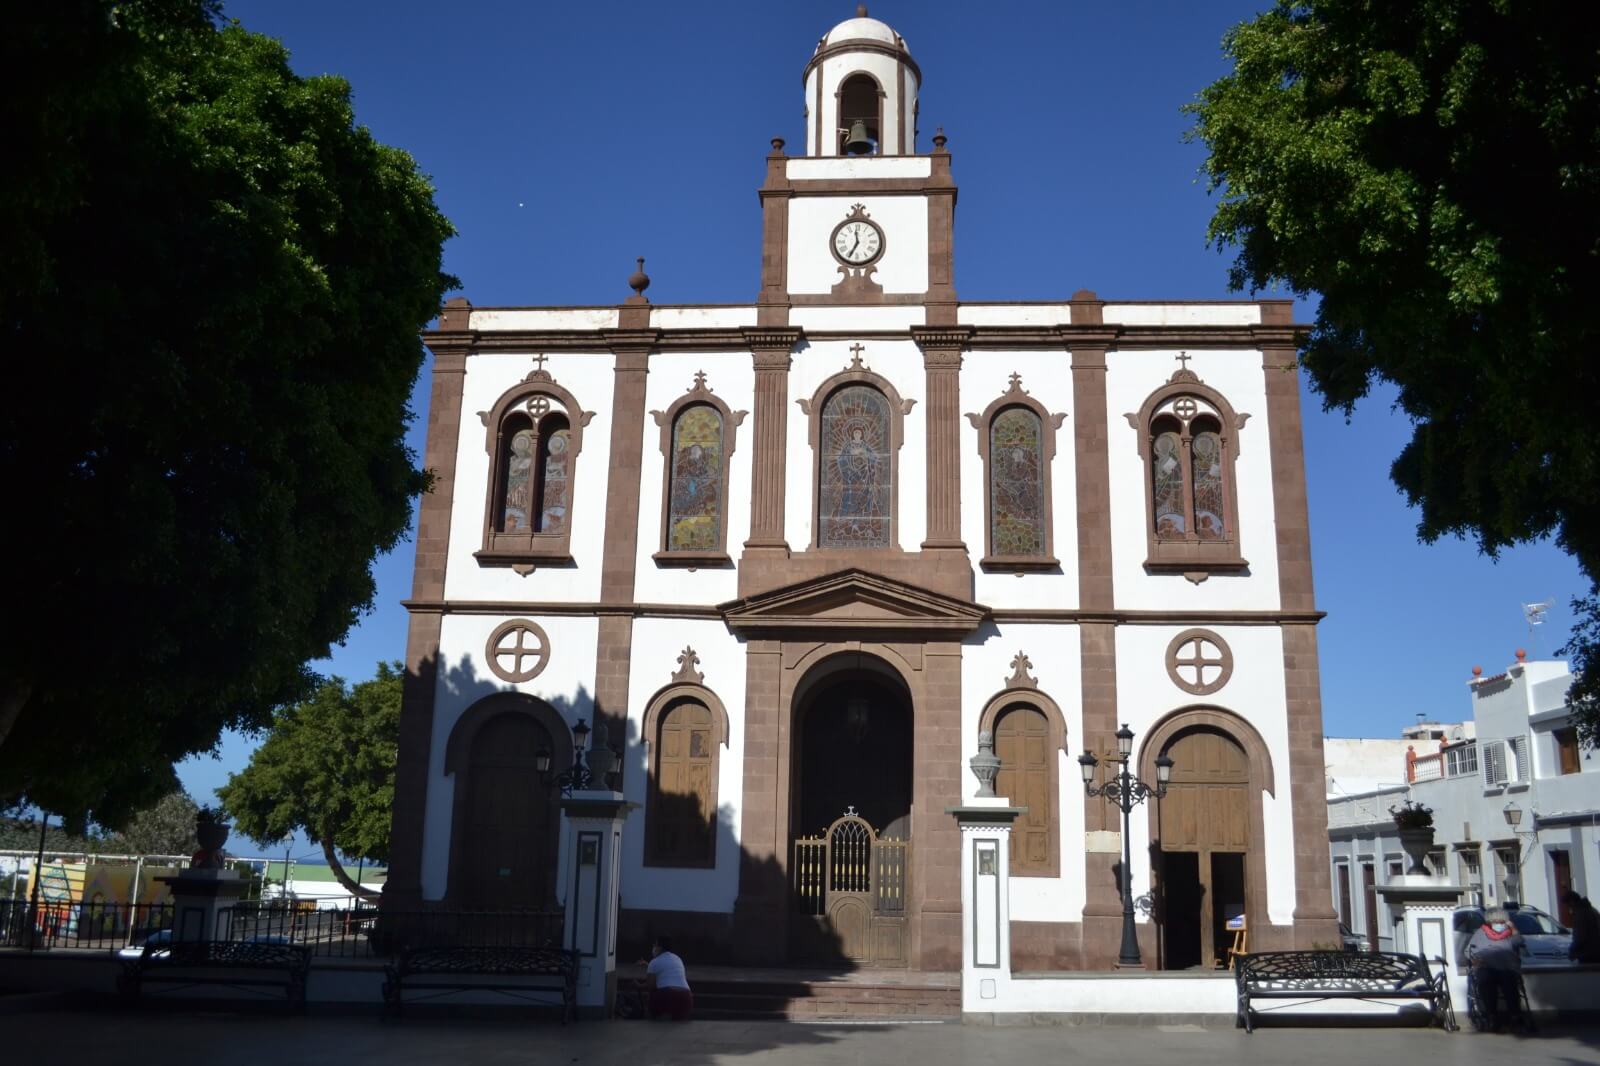 Main Church of Nuestra Señora de la Concepción